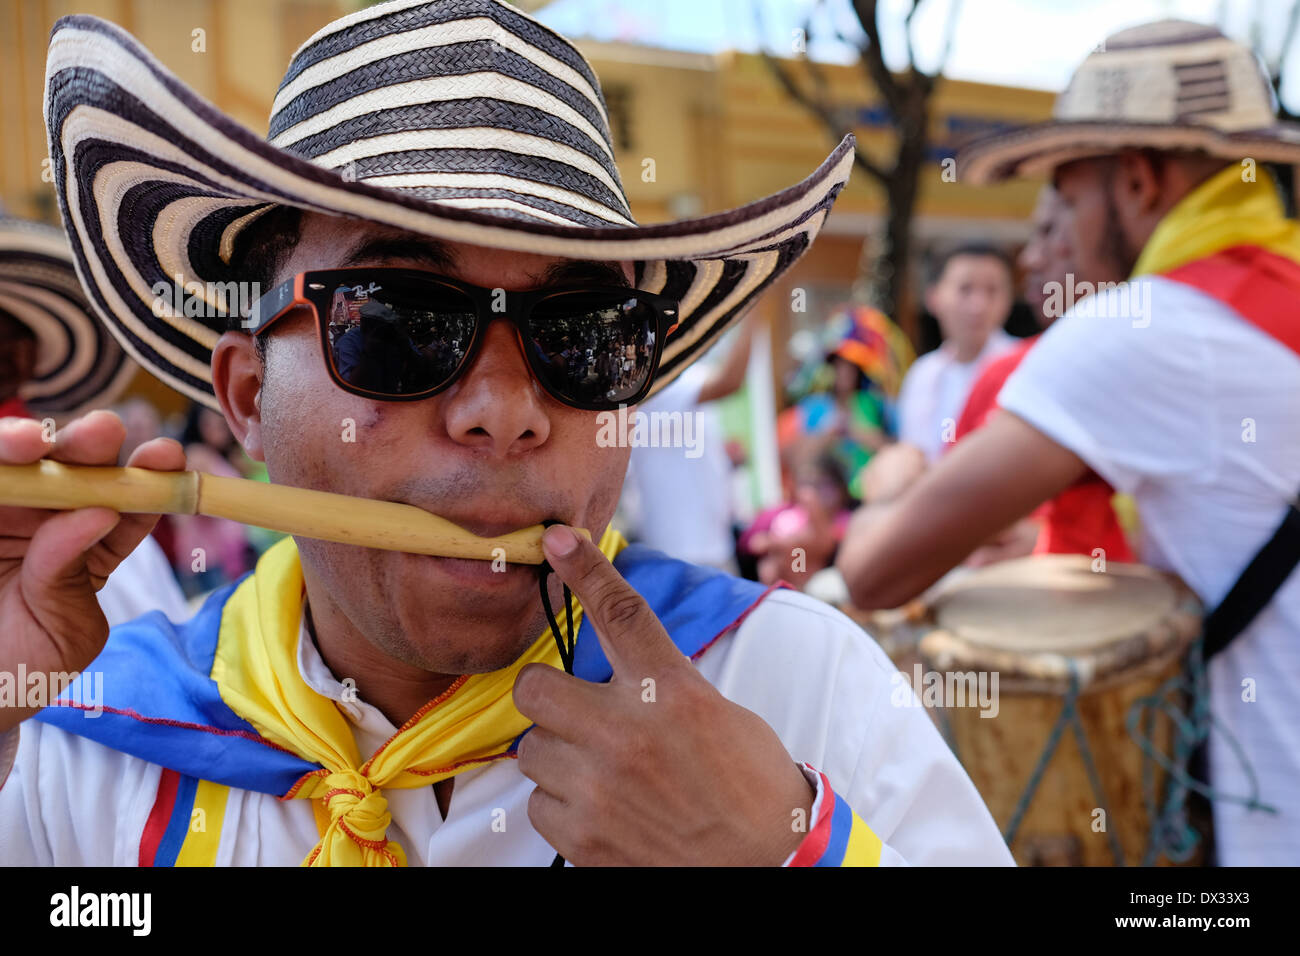 MIAMI - 9. März 2014: Porträt des kolumbianischen Street Performer während der 37. Calle Ocho Festival, ein jährliches Ereignis, dass erfolgt über acht Straße in Little Havana mit viel Musik, Essen, und es ist die größte Party der Stadt, die hispanic Erbe feiert. Stockfoto